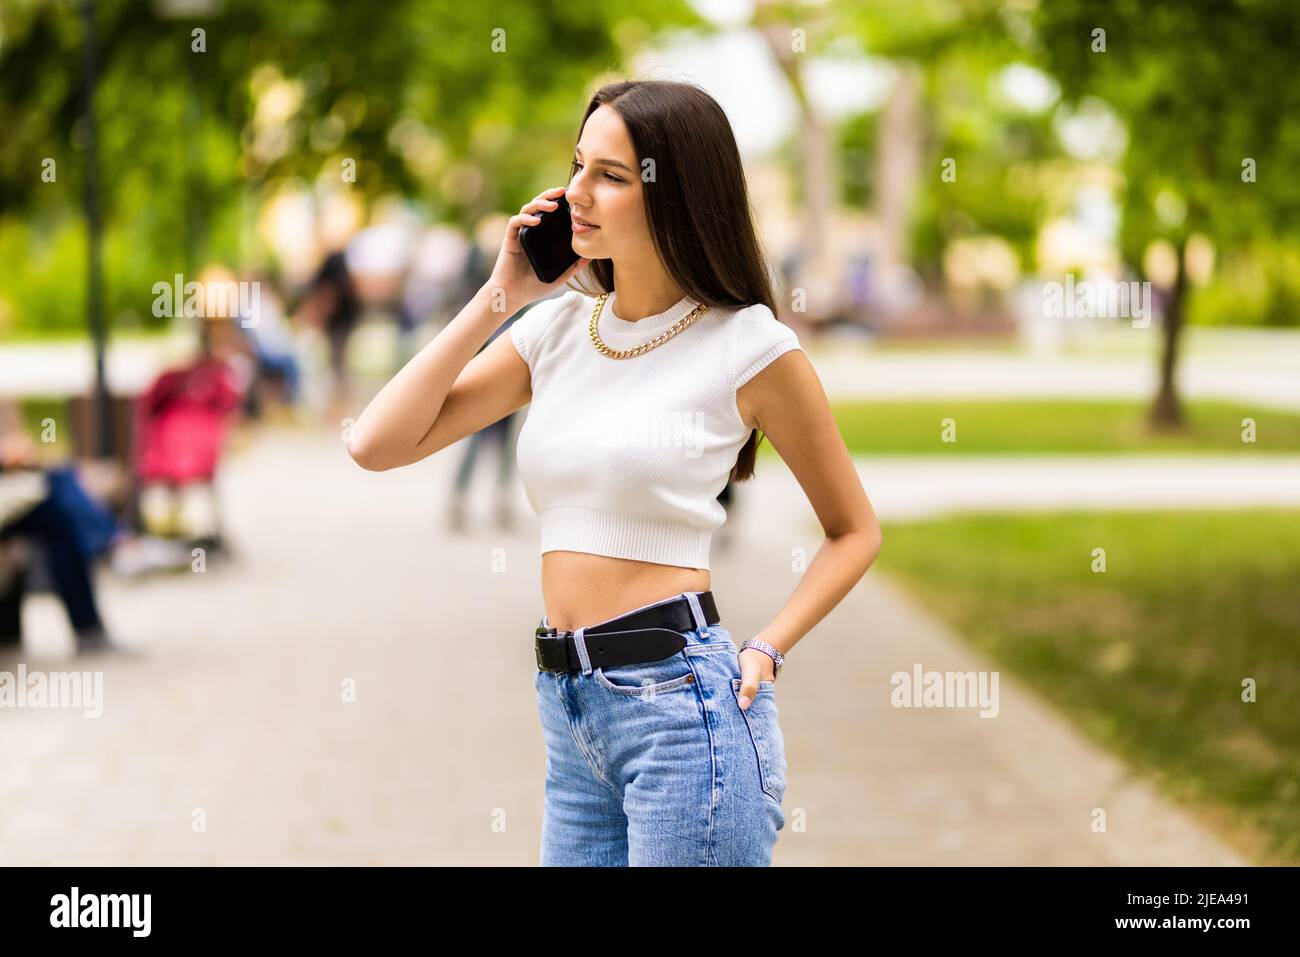 Porträt einer jungen attraktiven dunkelhaarigen Frau, die im Sommer im grünen Park auf dem Mobiltelefon spricht. Stockfoto